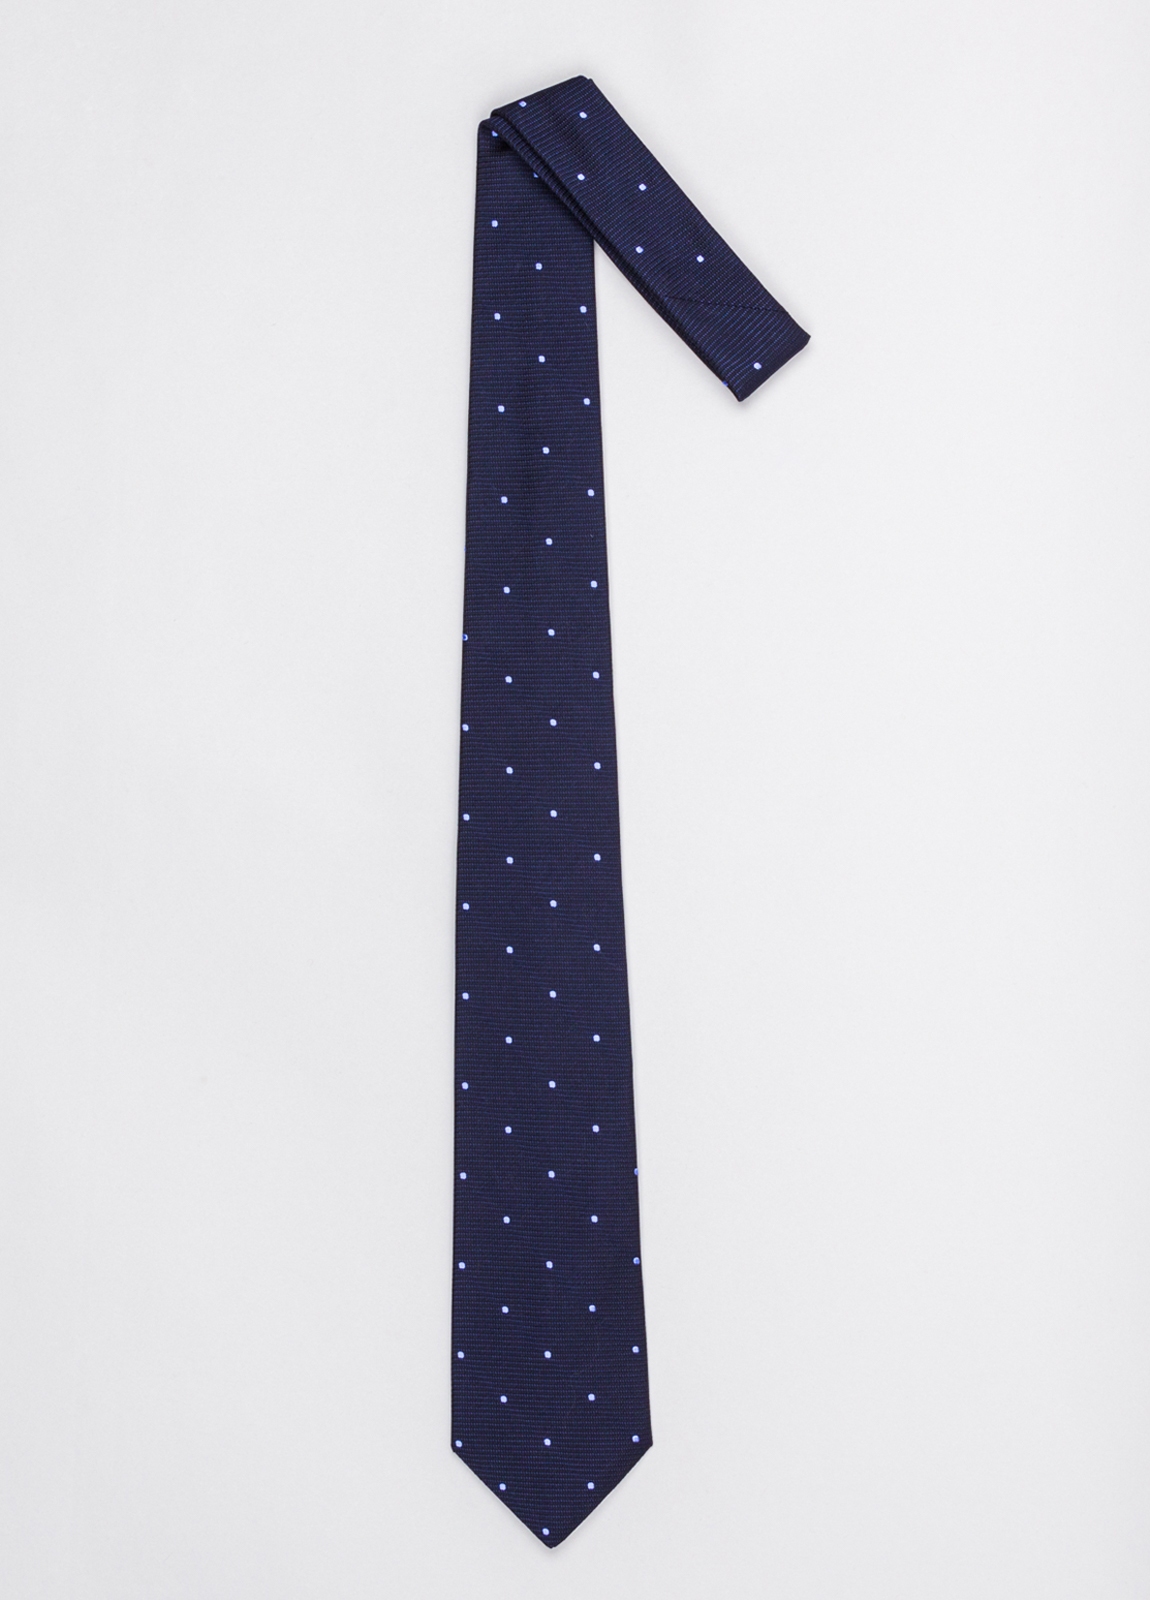 Corbata FUREST COLECCIÓN color marino con topito azul. - Ítem1